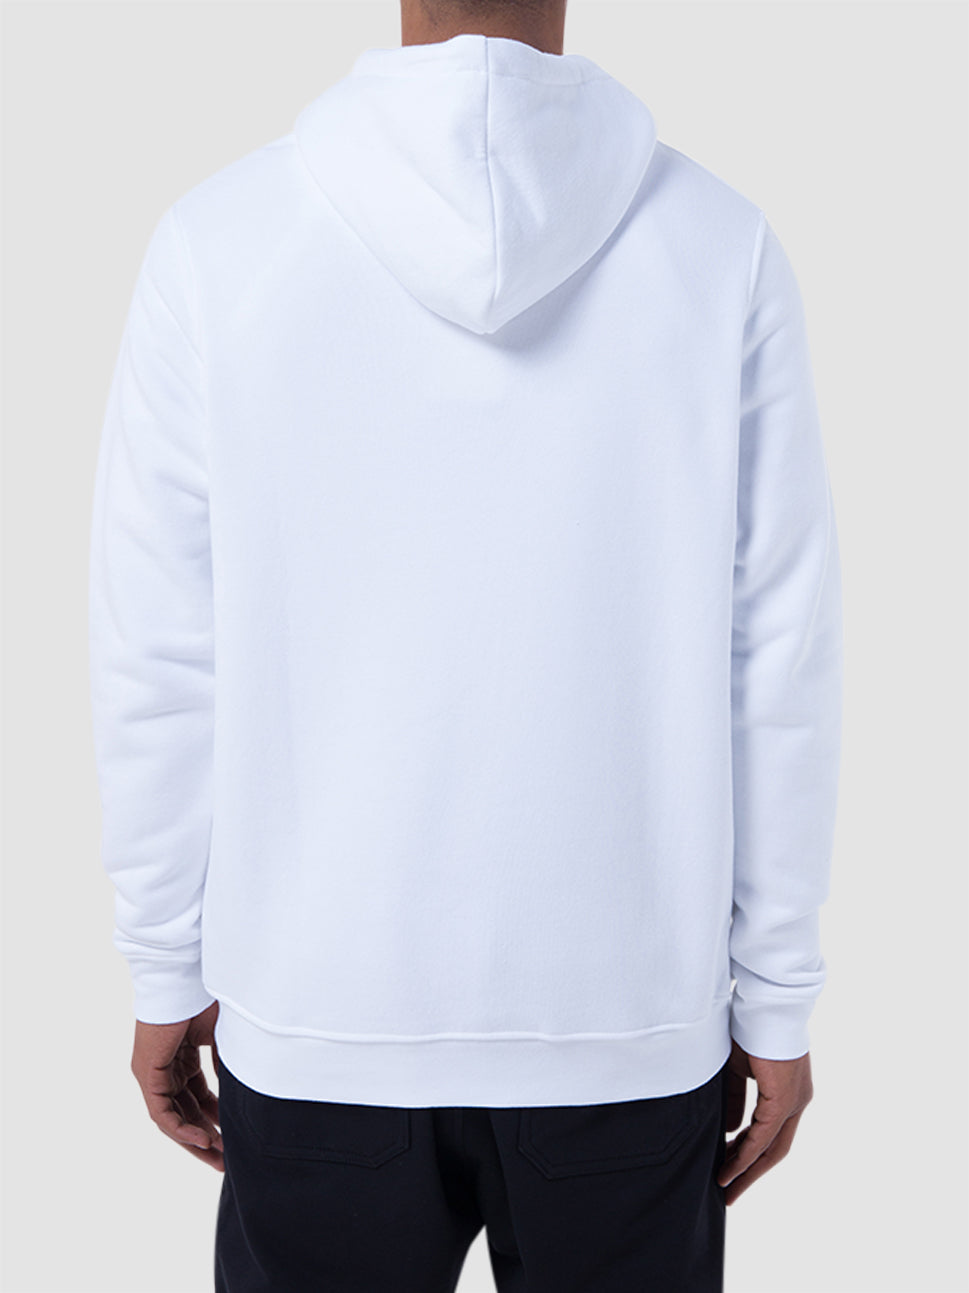 balr brand straight hoodie white b1261 1017